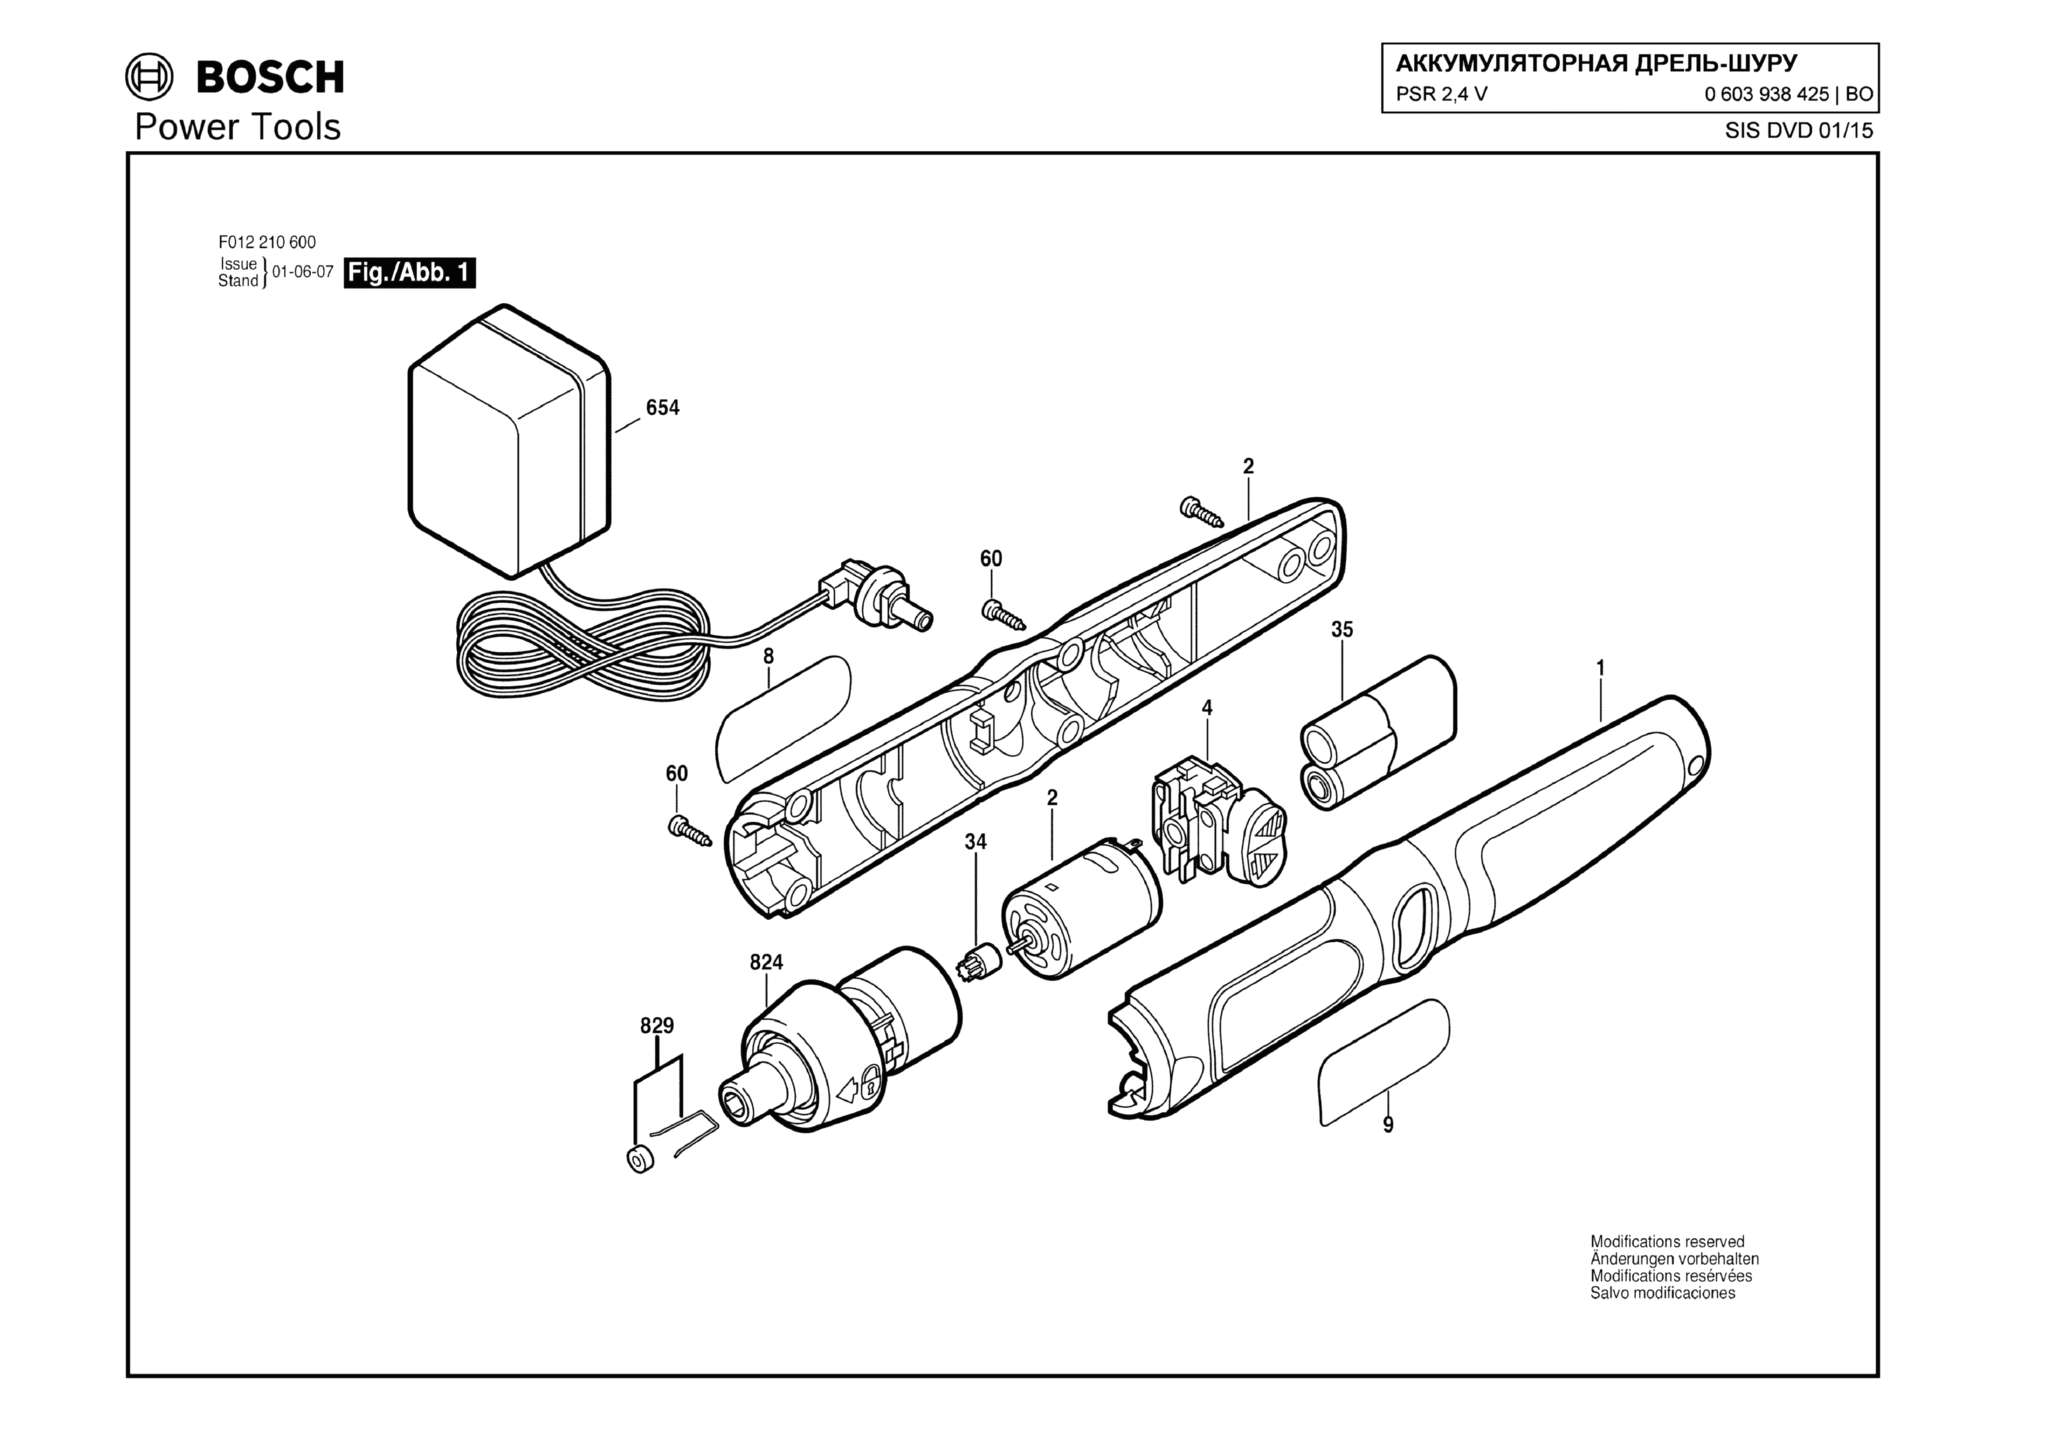 Запчасти, схема и деталировка Bosch PSR 2,4 V (ТИП 0603938425)